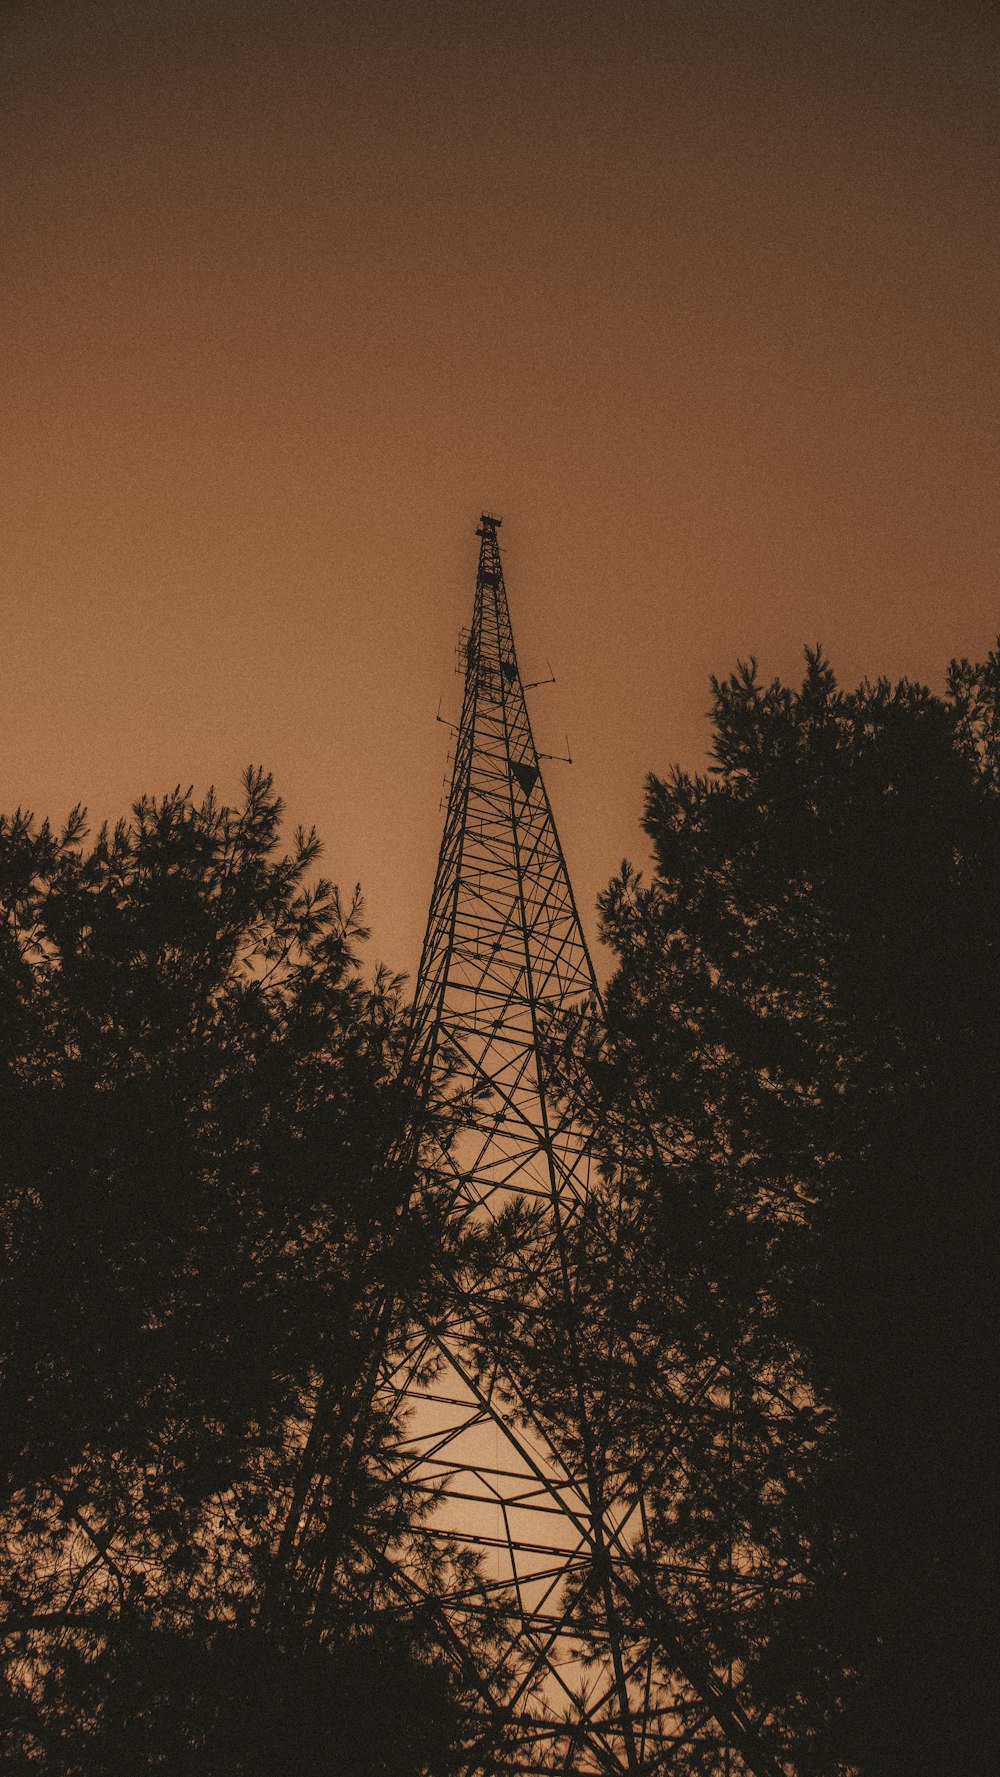 une grande tour surmontée d’une antenne radio